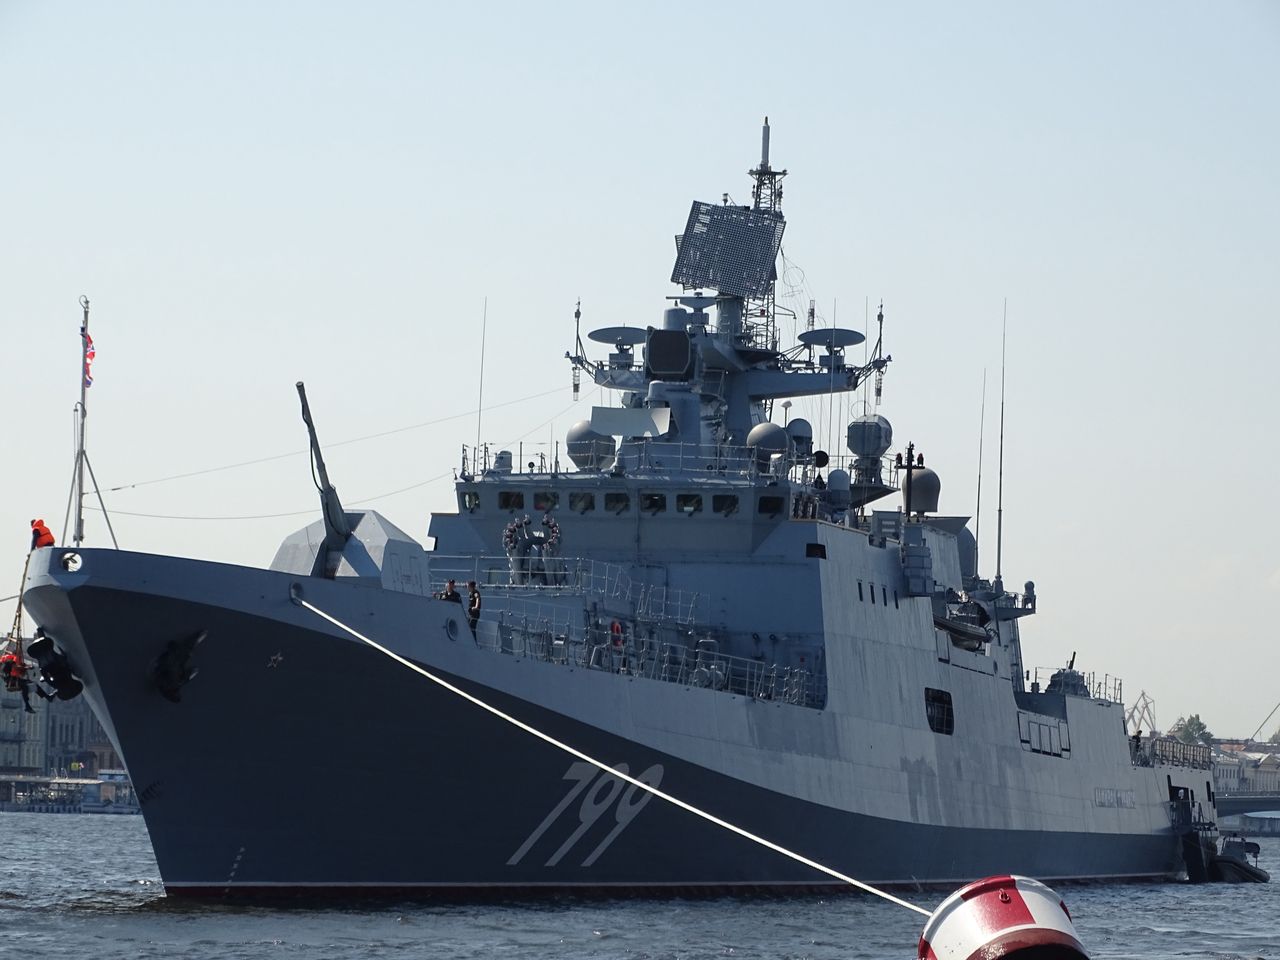 Rosyjski sprzęt na morzu. Ukraińcy apelują o "natychmiastową reakcję"